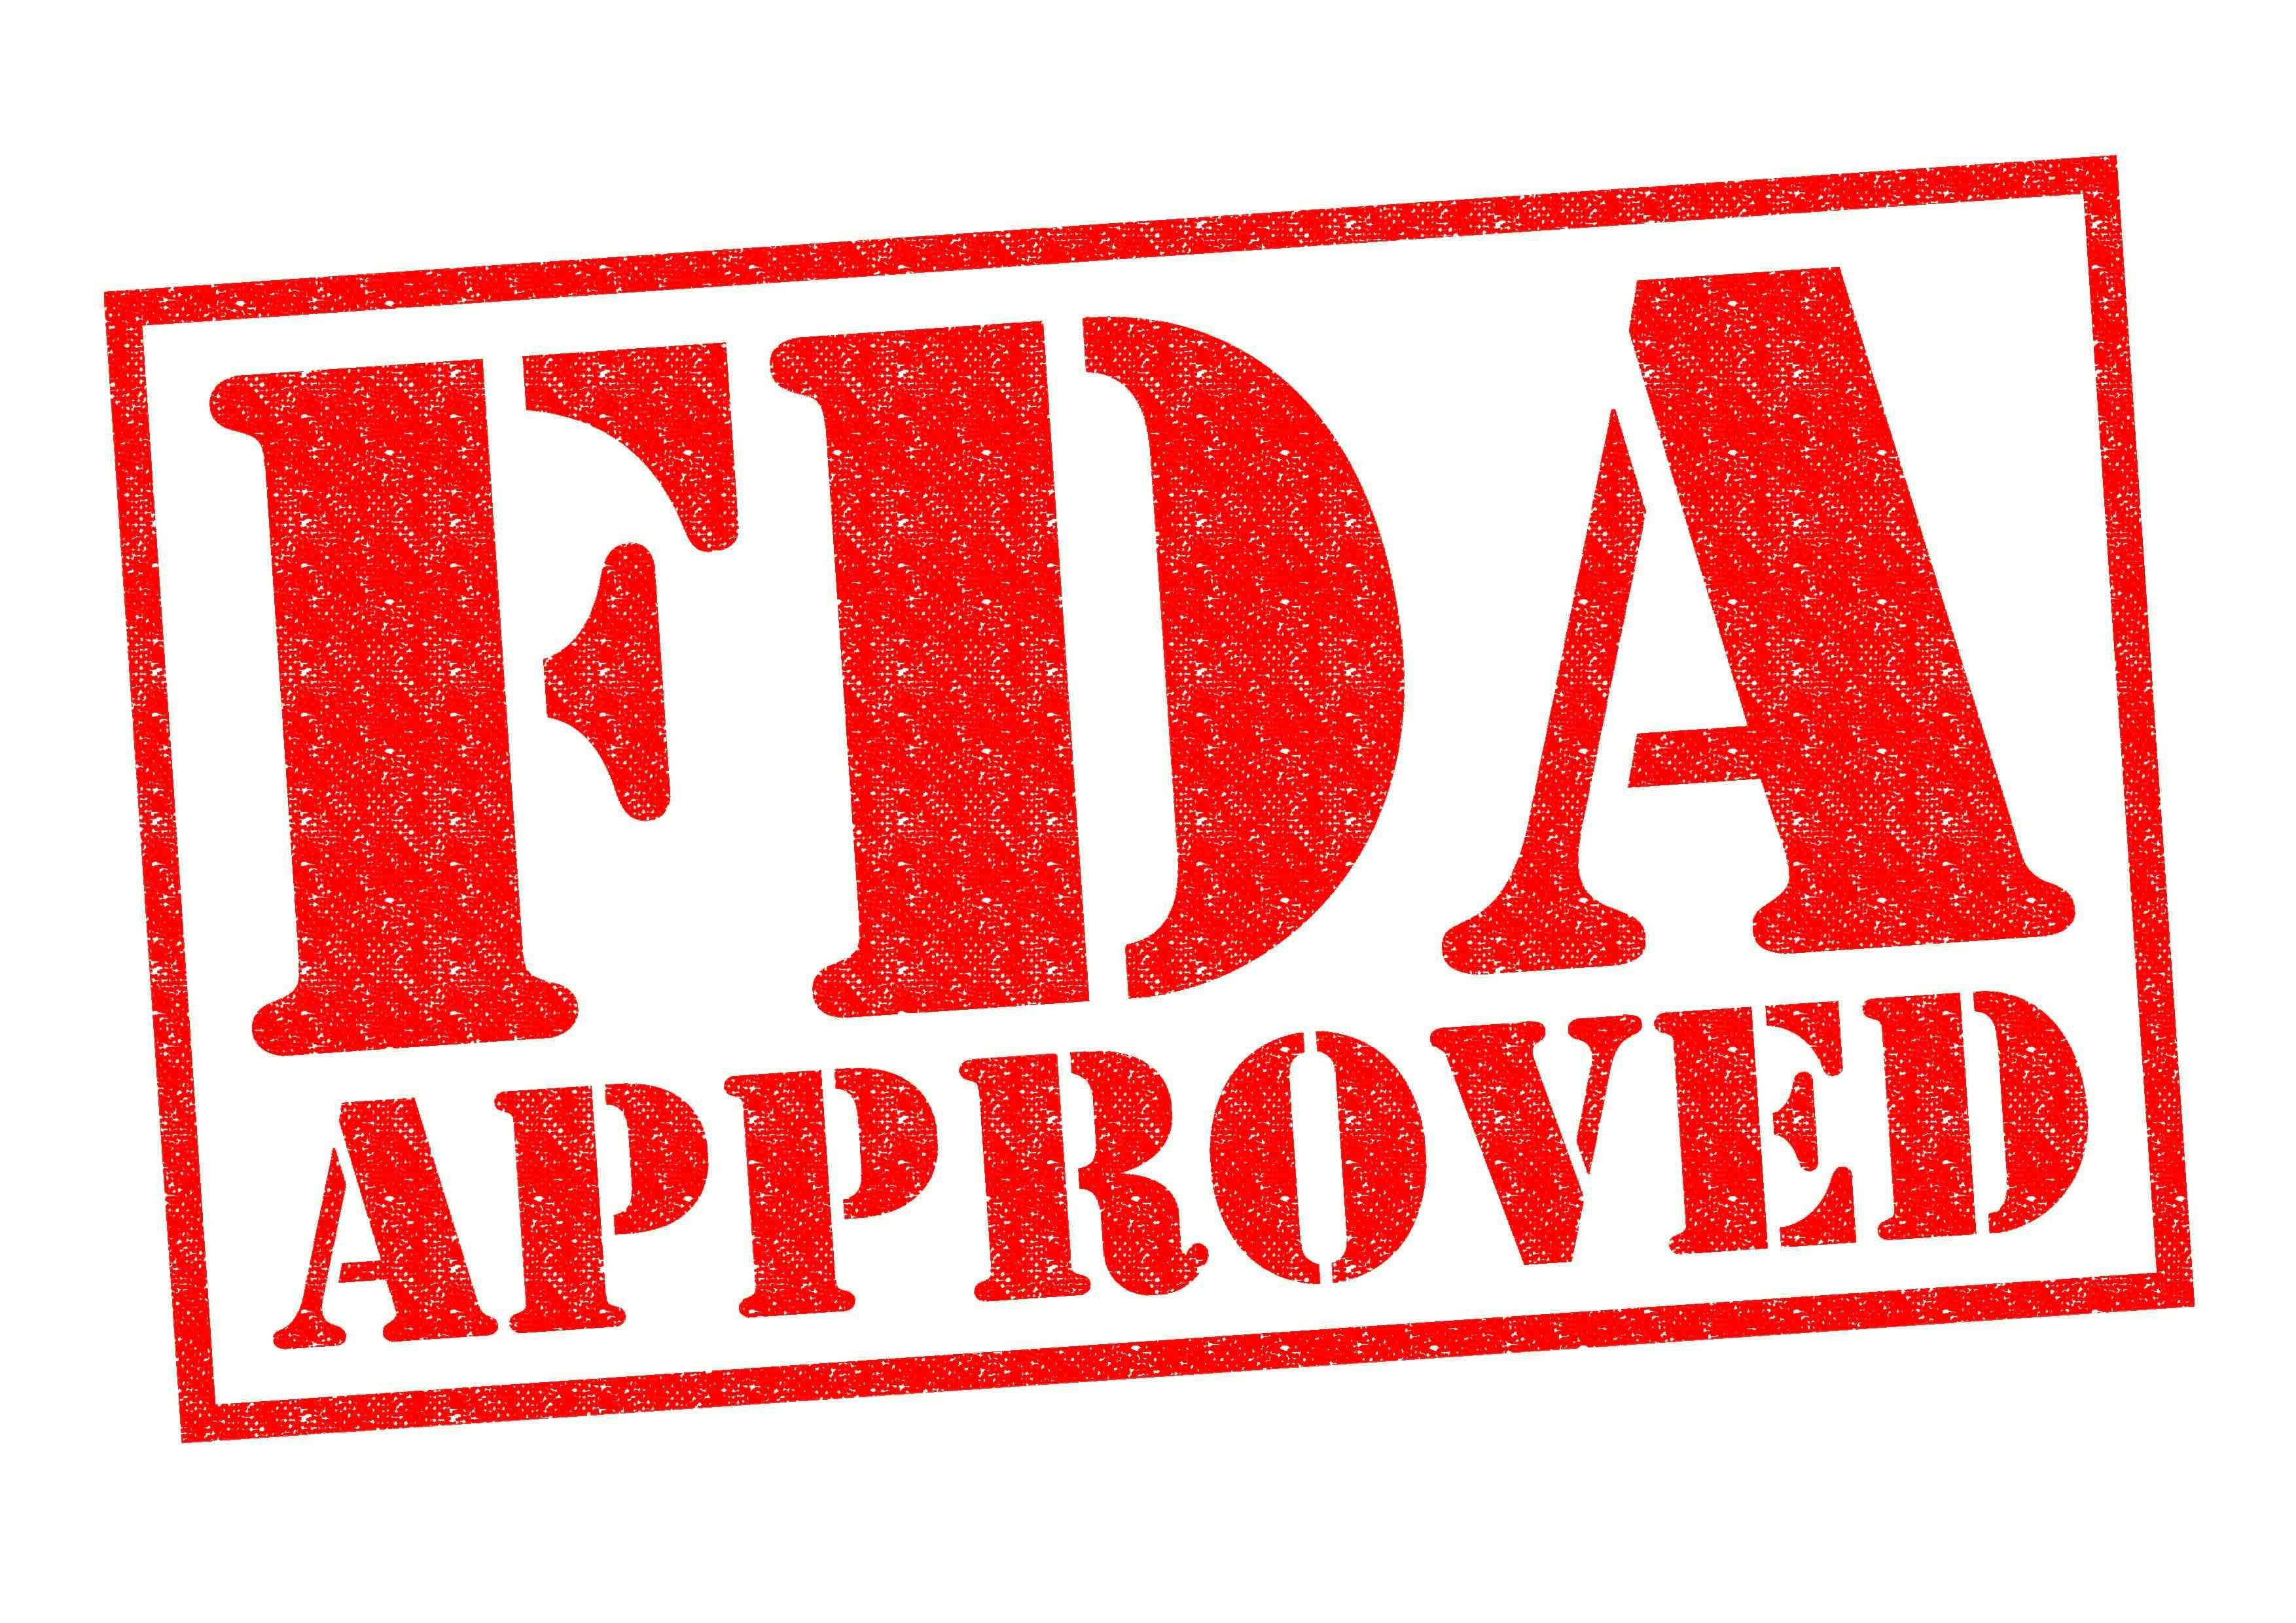 FDA Approved - chrisdorney - stock.adobe.com